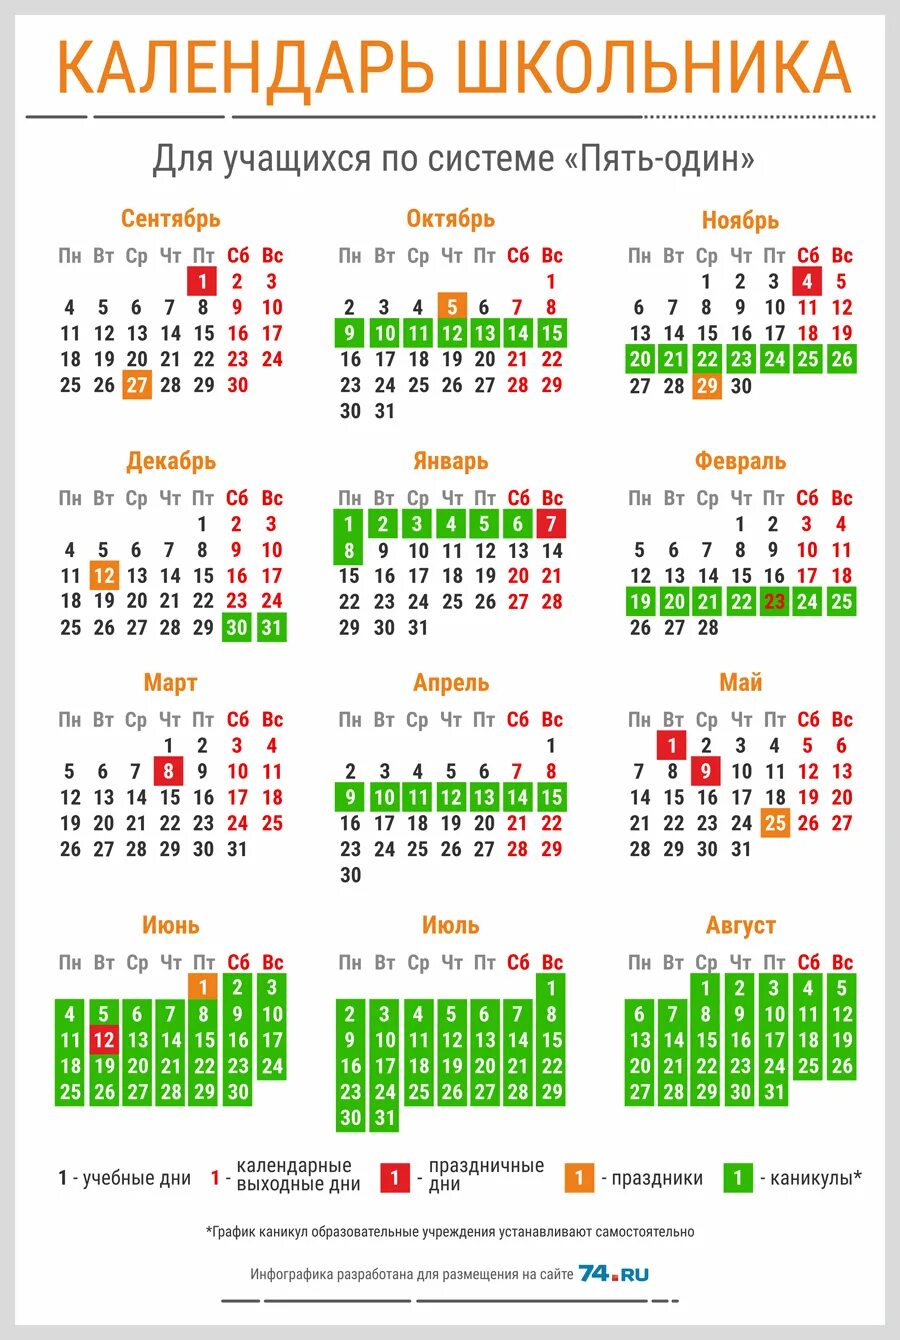 Сколько праздников в 4 четверти. Календарь школьника. Выходные в мое в школах. Календарь каникул. Календарь школьных праздников.